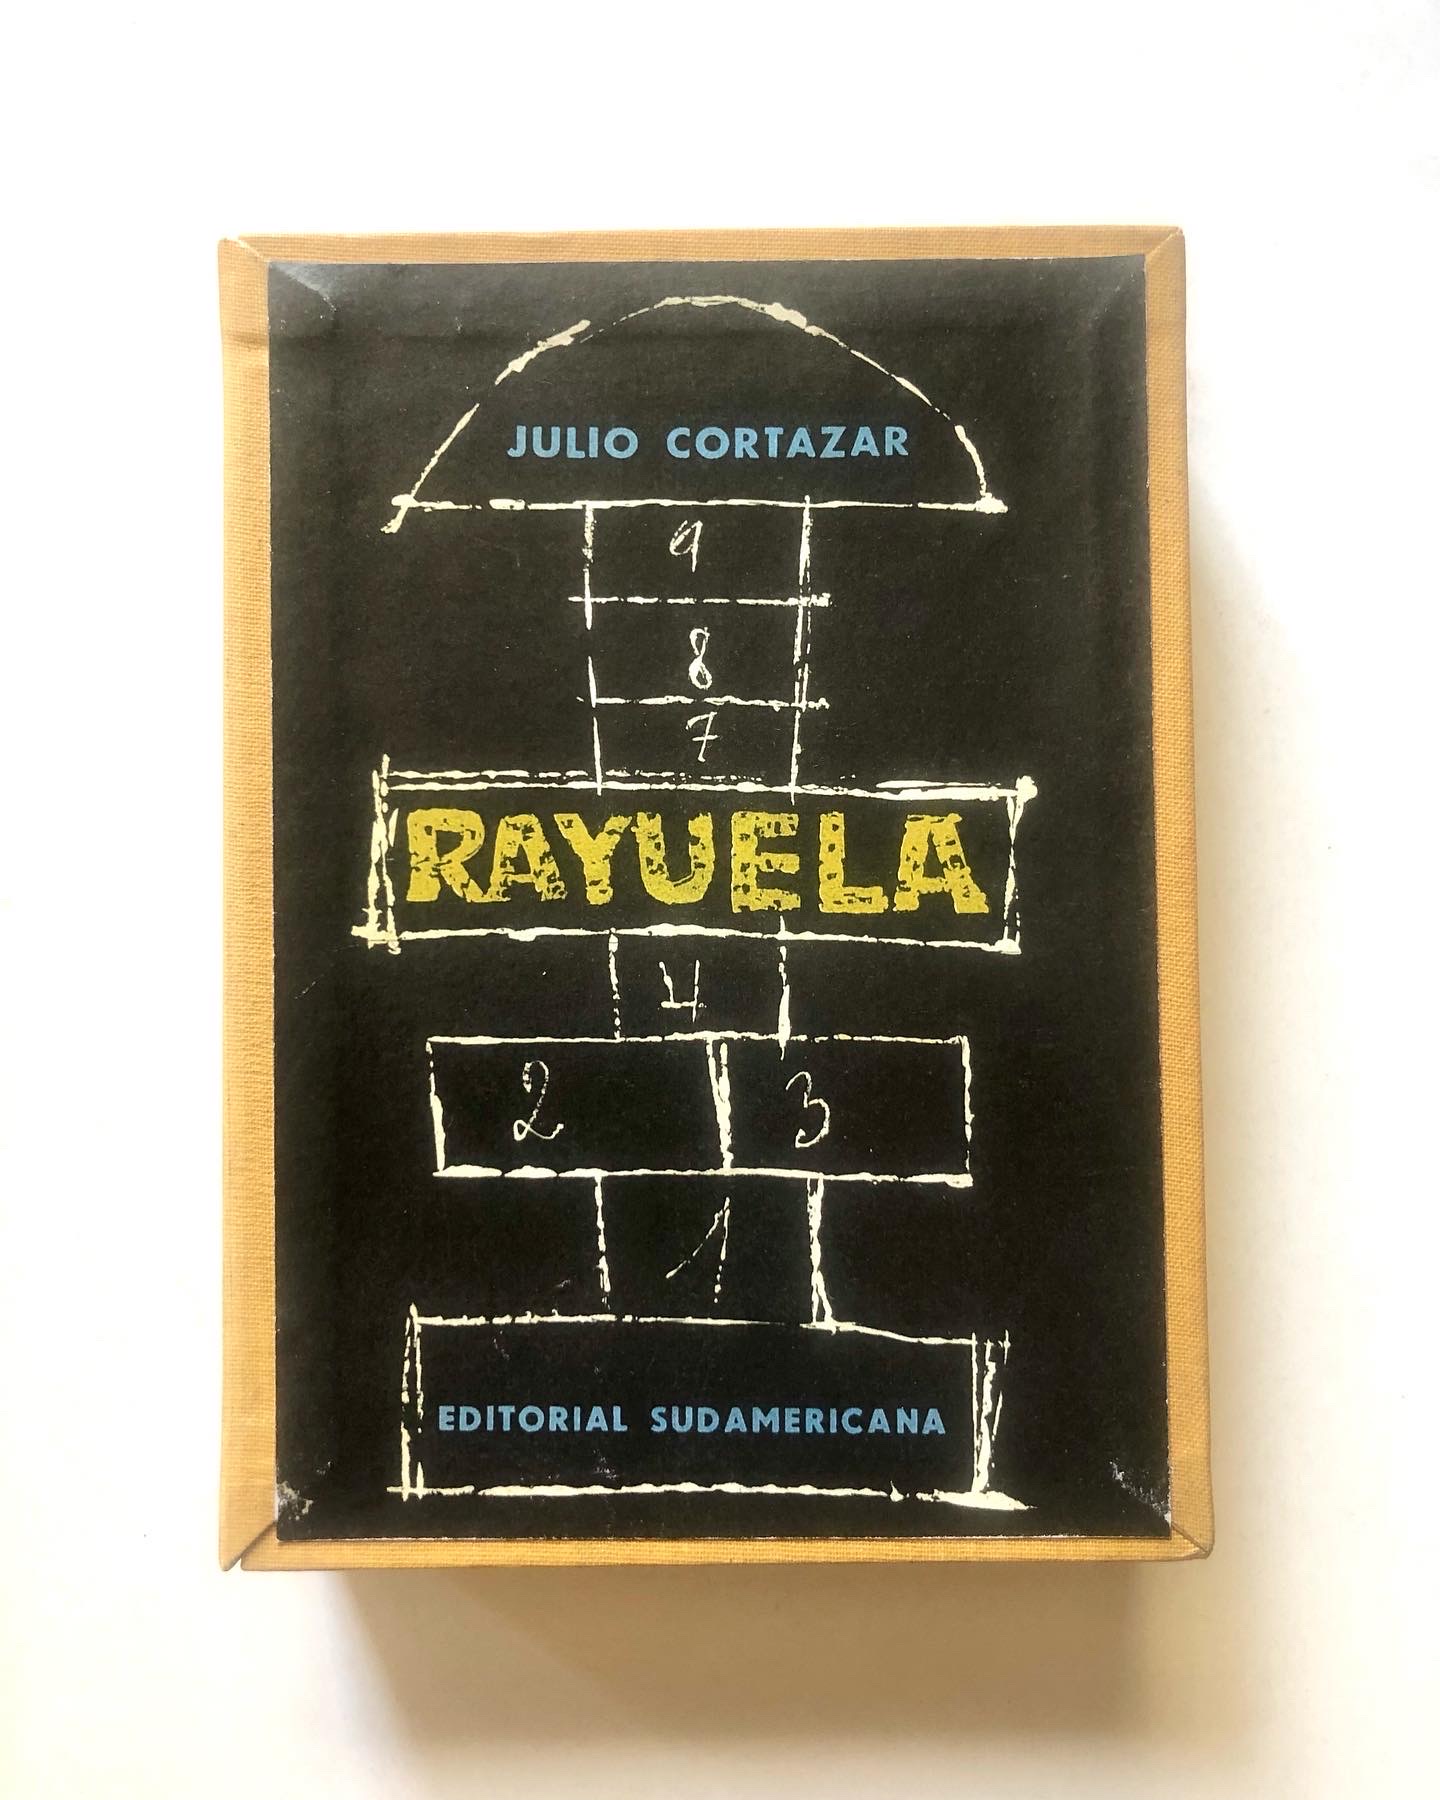 Julio Cortázar.	Rayuela